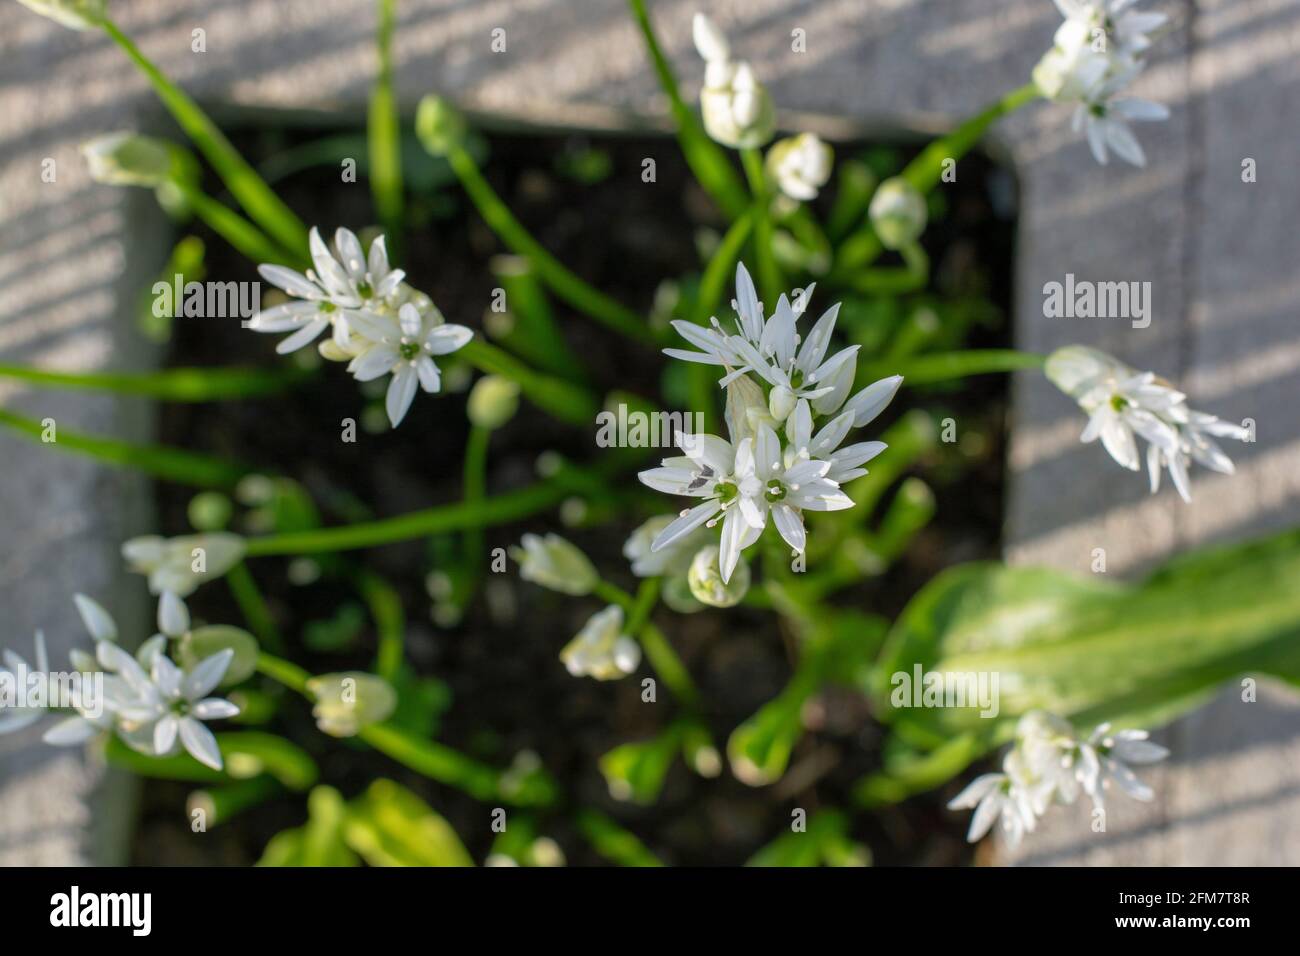 Aglio selvatico in fiore (Allium ursinum) in giardino. La pianta è anche conosciuta come ramsons, fibbramoni, aglio a foglia larga, aglio di legno, porro di orso. Foto Stock